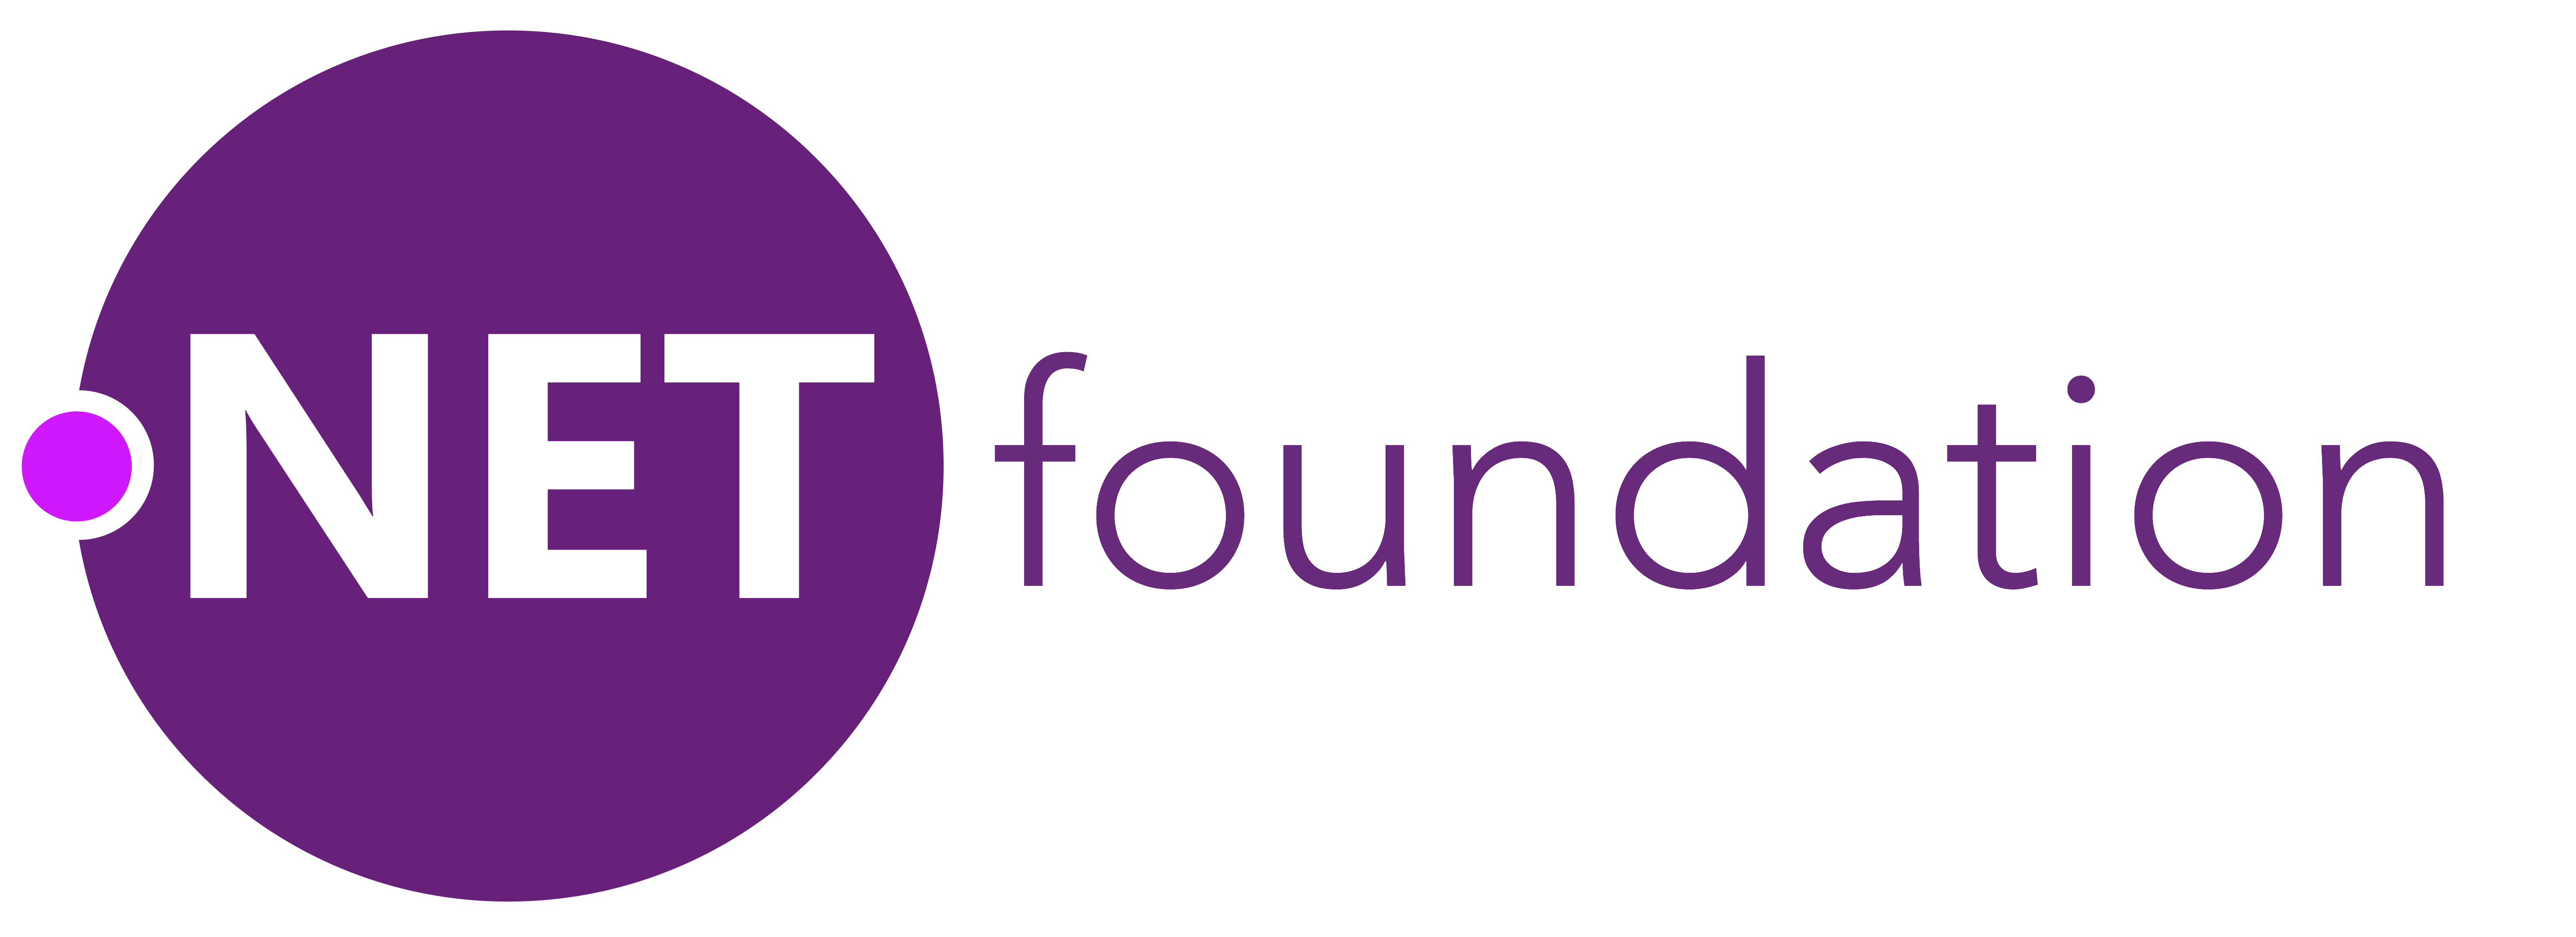 dotnet foundation logo